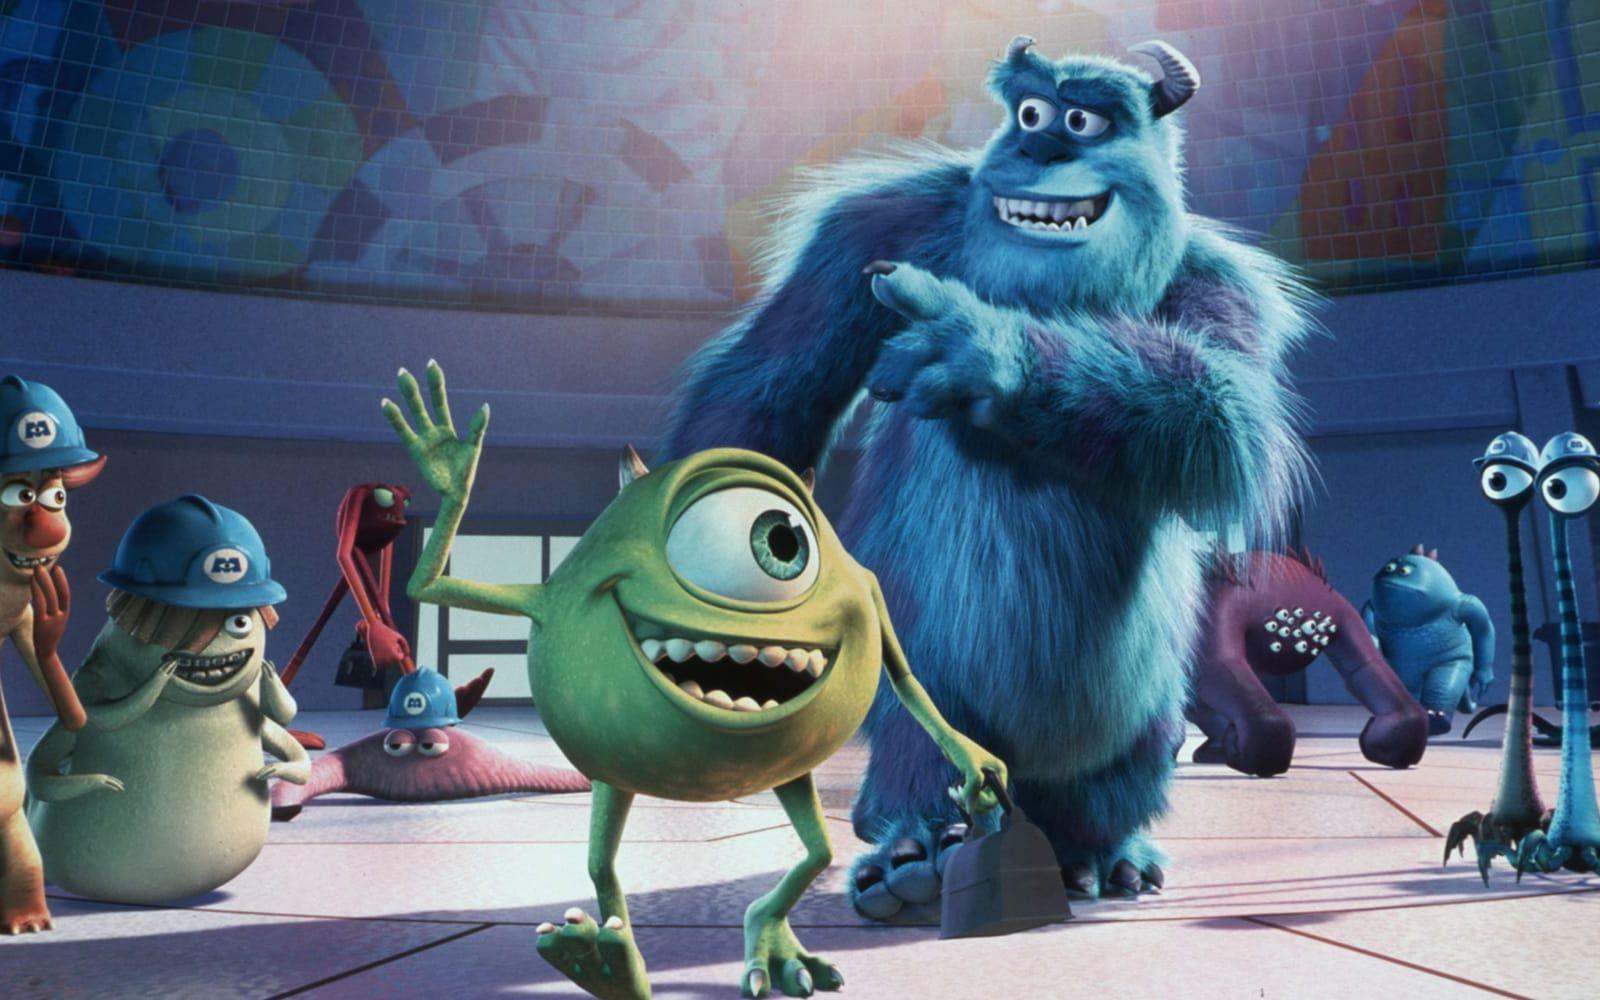 <strong> ALLT I PIXAR HÄNGAR IHOP.</strong>  The Pixar Theory är <a href="”https://jonnegroni.com/2013/07/11/the-pixar-theory”" target="”_blank”"> en idé</a> om att alla Pixarfilmer utspelar sig i samma värld och följer en tidslinje, från Den gode dinosaurien (där förhistoriska djur har språk och intelligens) till Monster Inc där monstren utvecklats och överlevt människor. Deras ”monstervärld" är inte en parallell värld, som man kanske kan tro, utan en framtid när människor försvunnit. Flickan i Monster Inc, Boo, ska ha använt monstrens portalmaskin för att skapa en tidsloop och hon kan bland annat synas som häxan i filmen Modig.